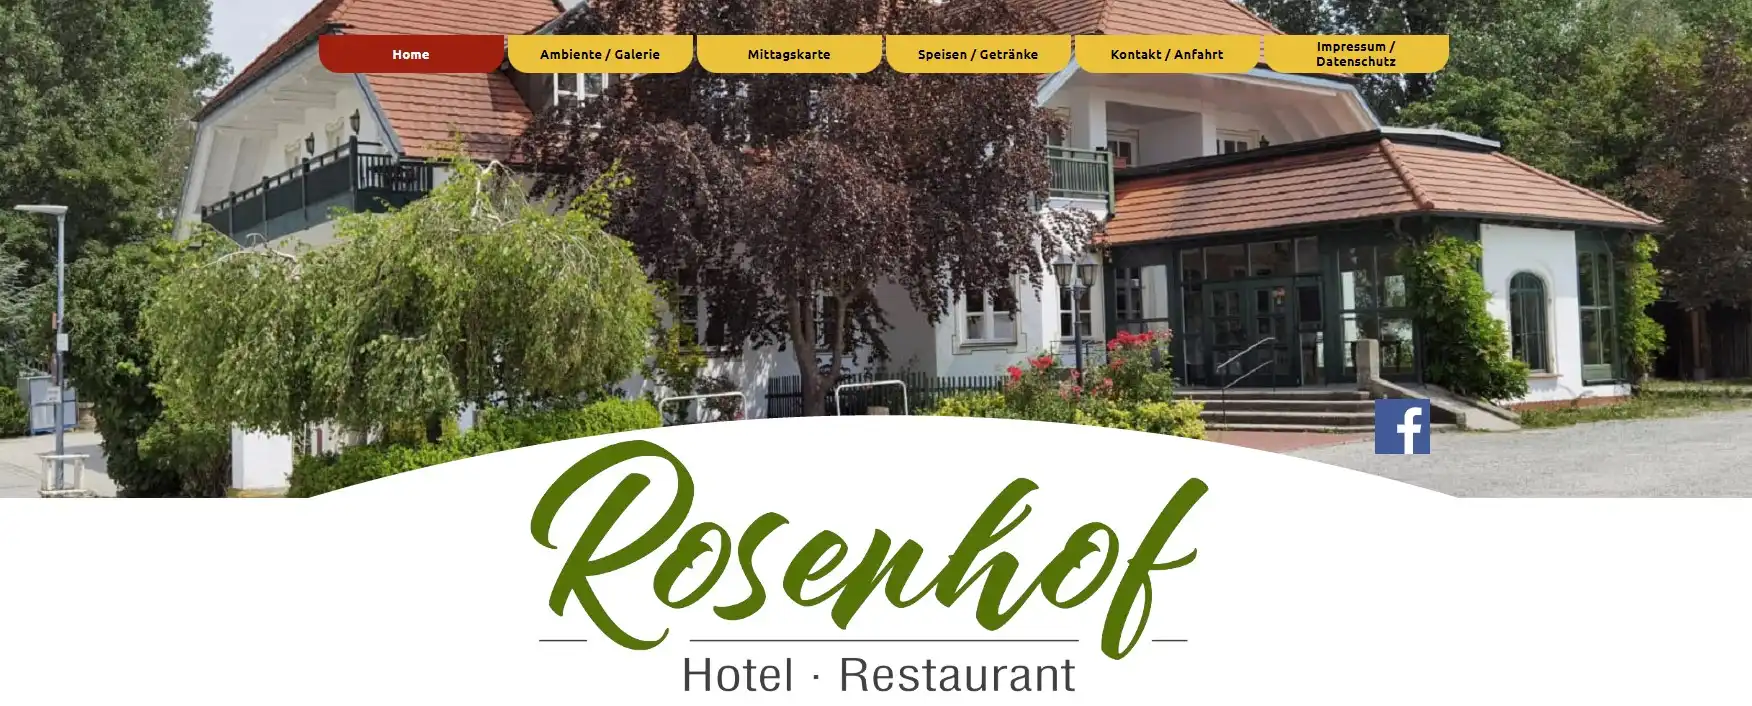 Rosenhof Hotel & Gastro GmbH